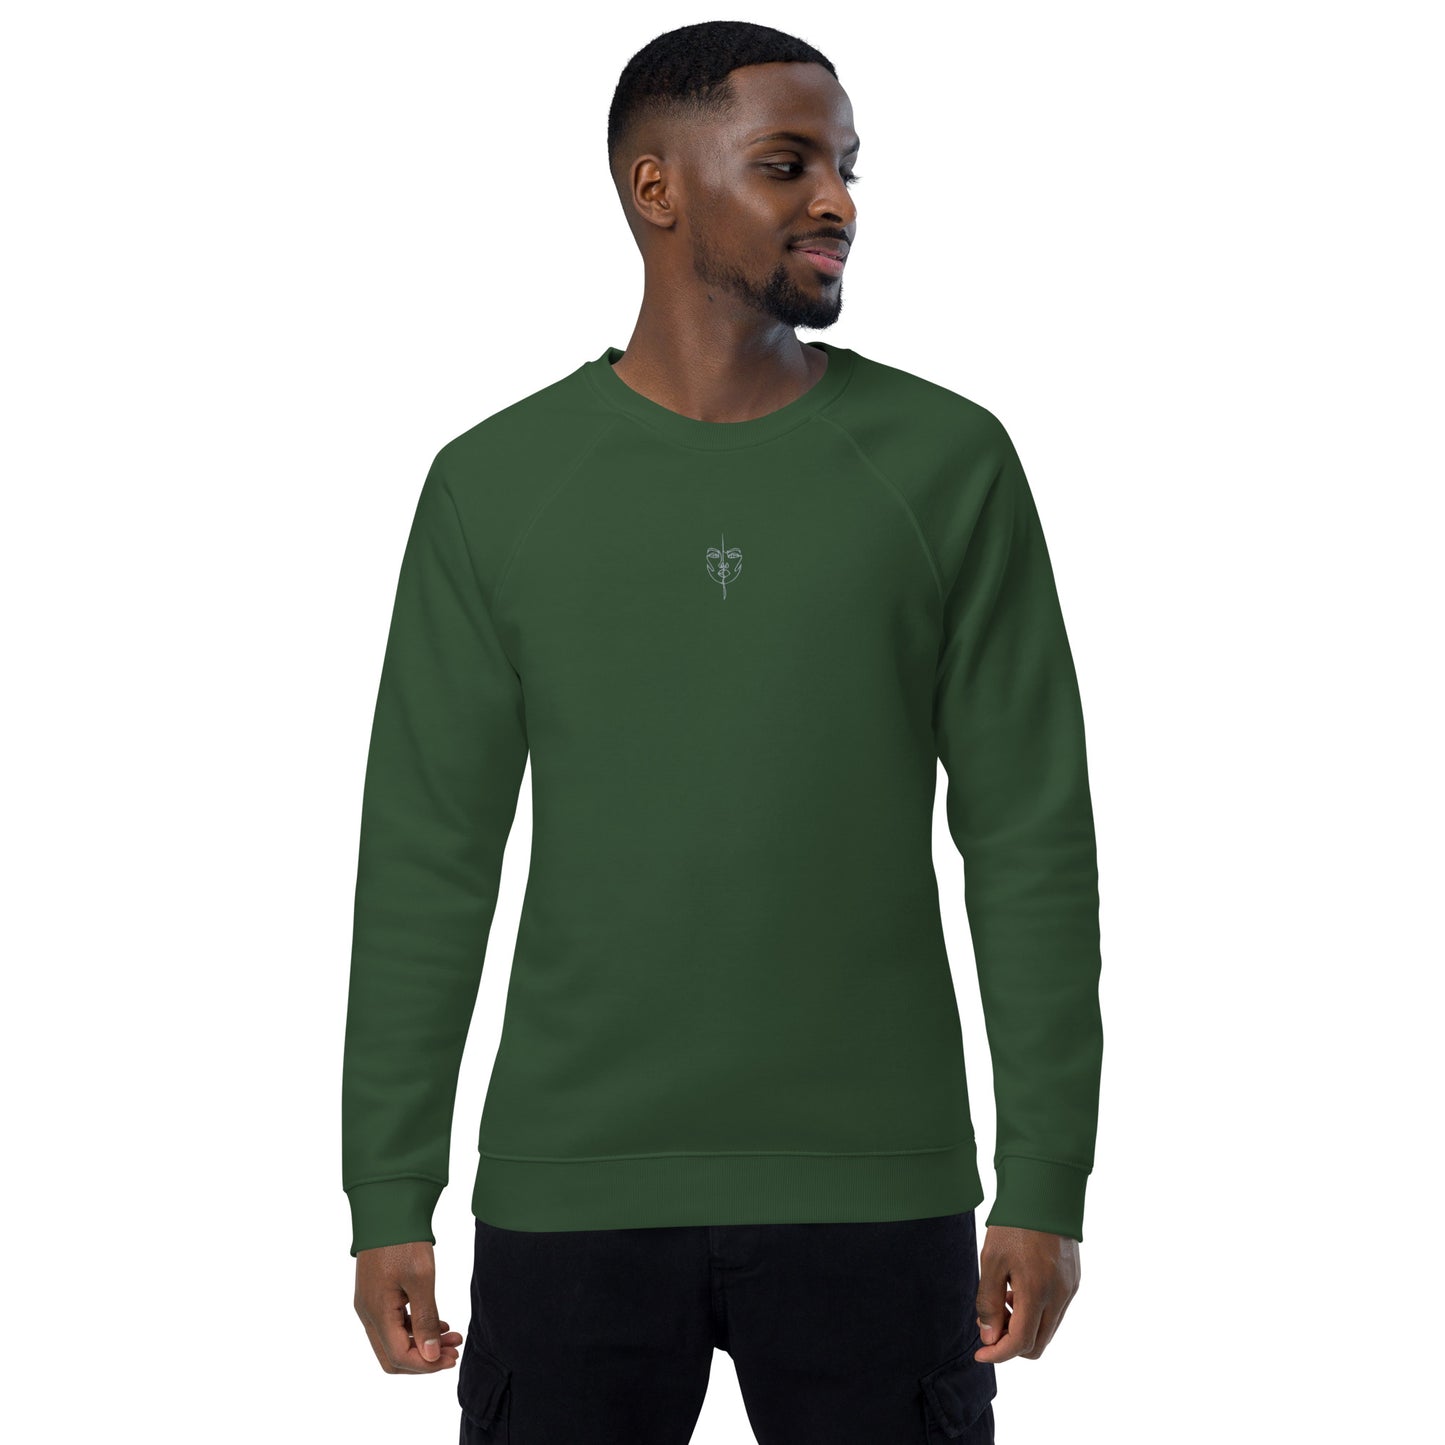 Eco Men's Sweatshirt